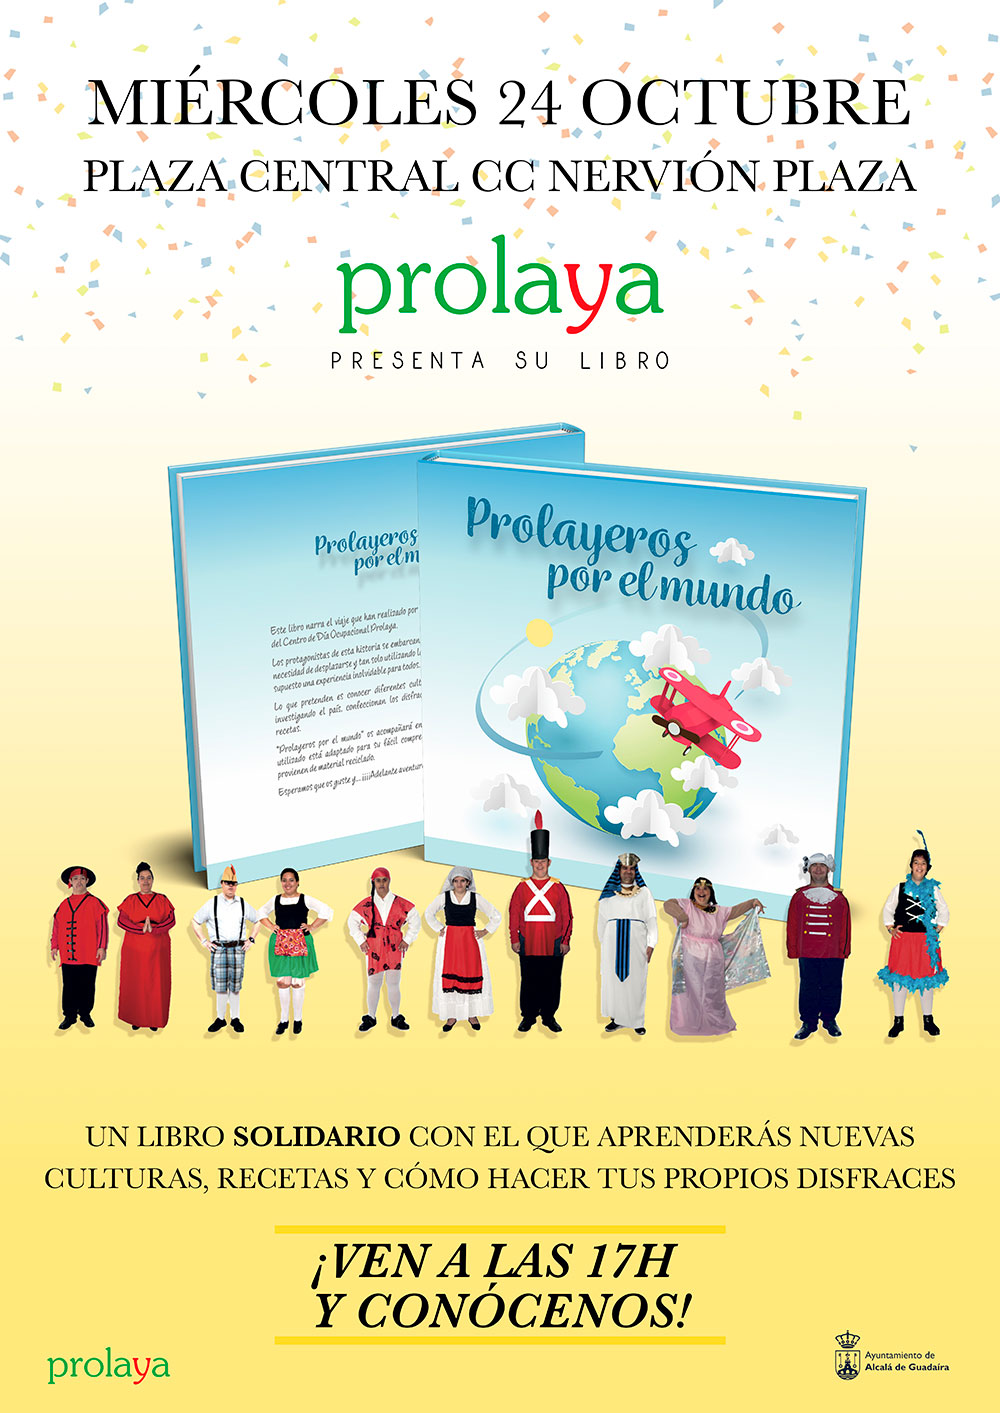 Presentación del libro Prolayeros por el Mundo. 24 de Octubre